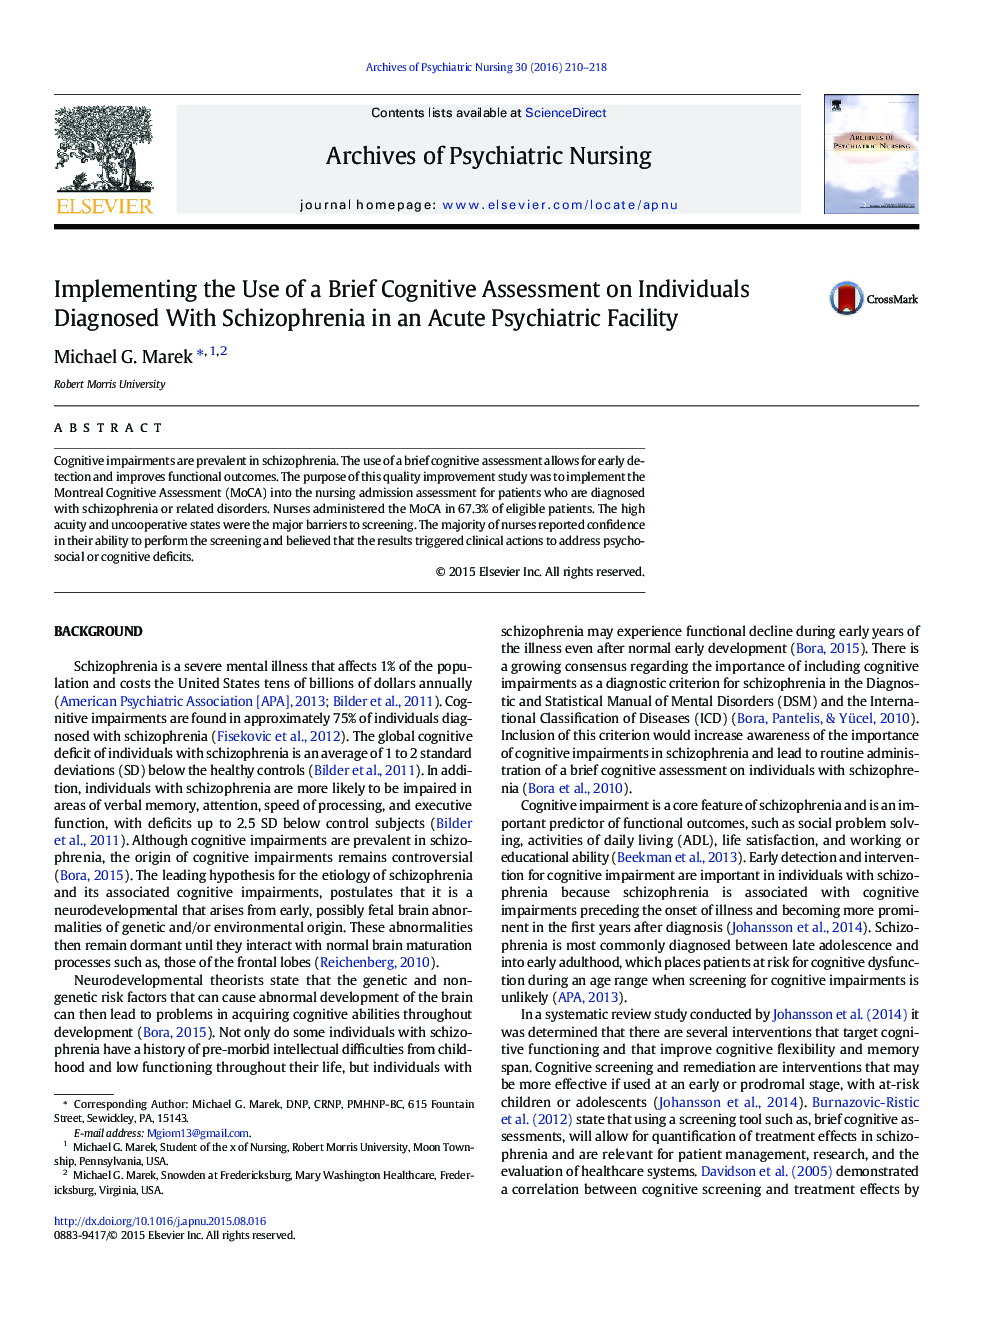 پیاده سازی با استفاده از یک ارزیابی شناختی مختصر از افراد مبتلا به اسکیزوفرنی در یک مرکز روانی حاد